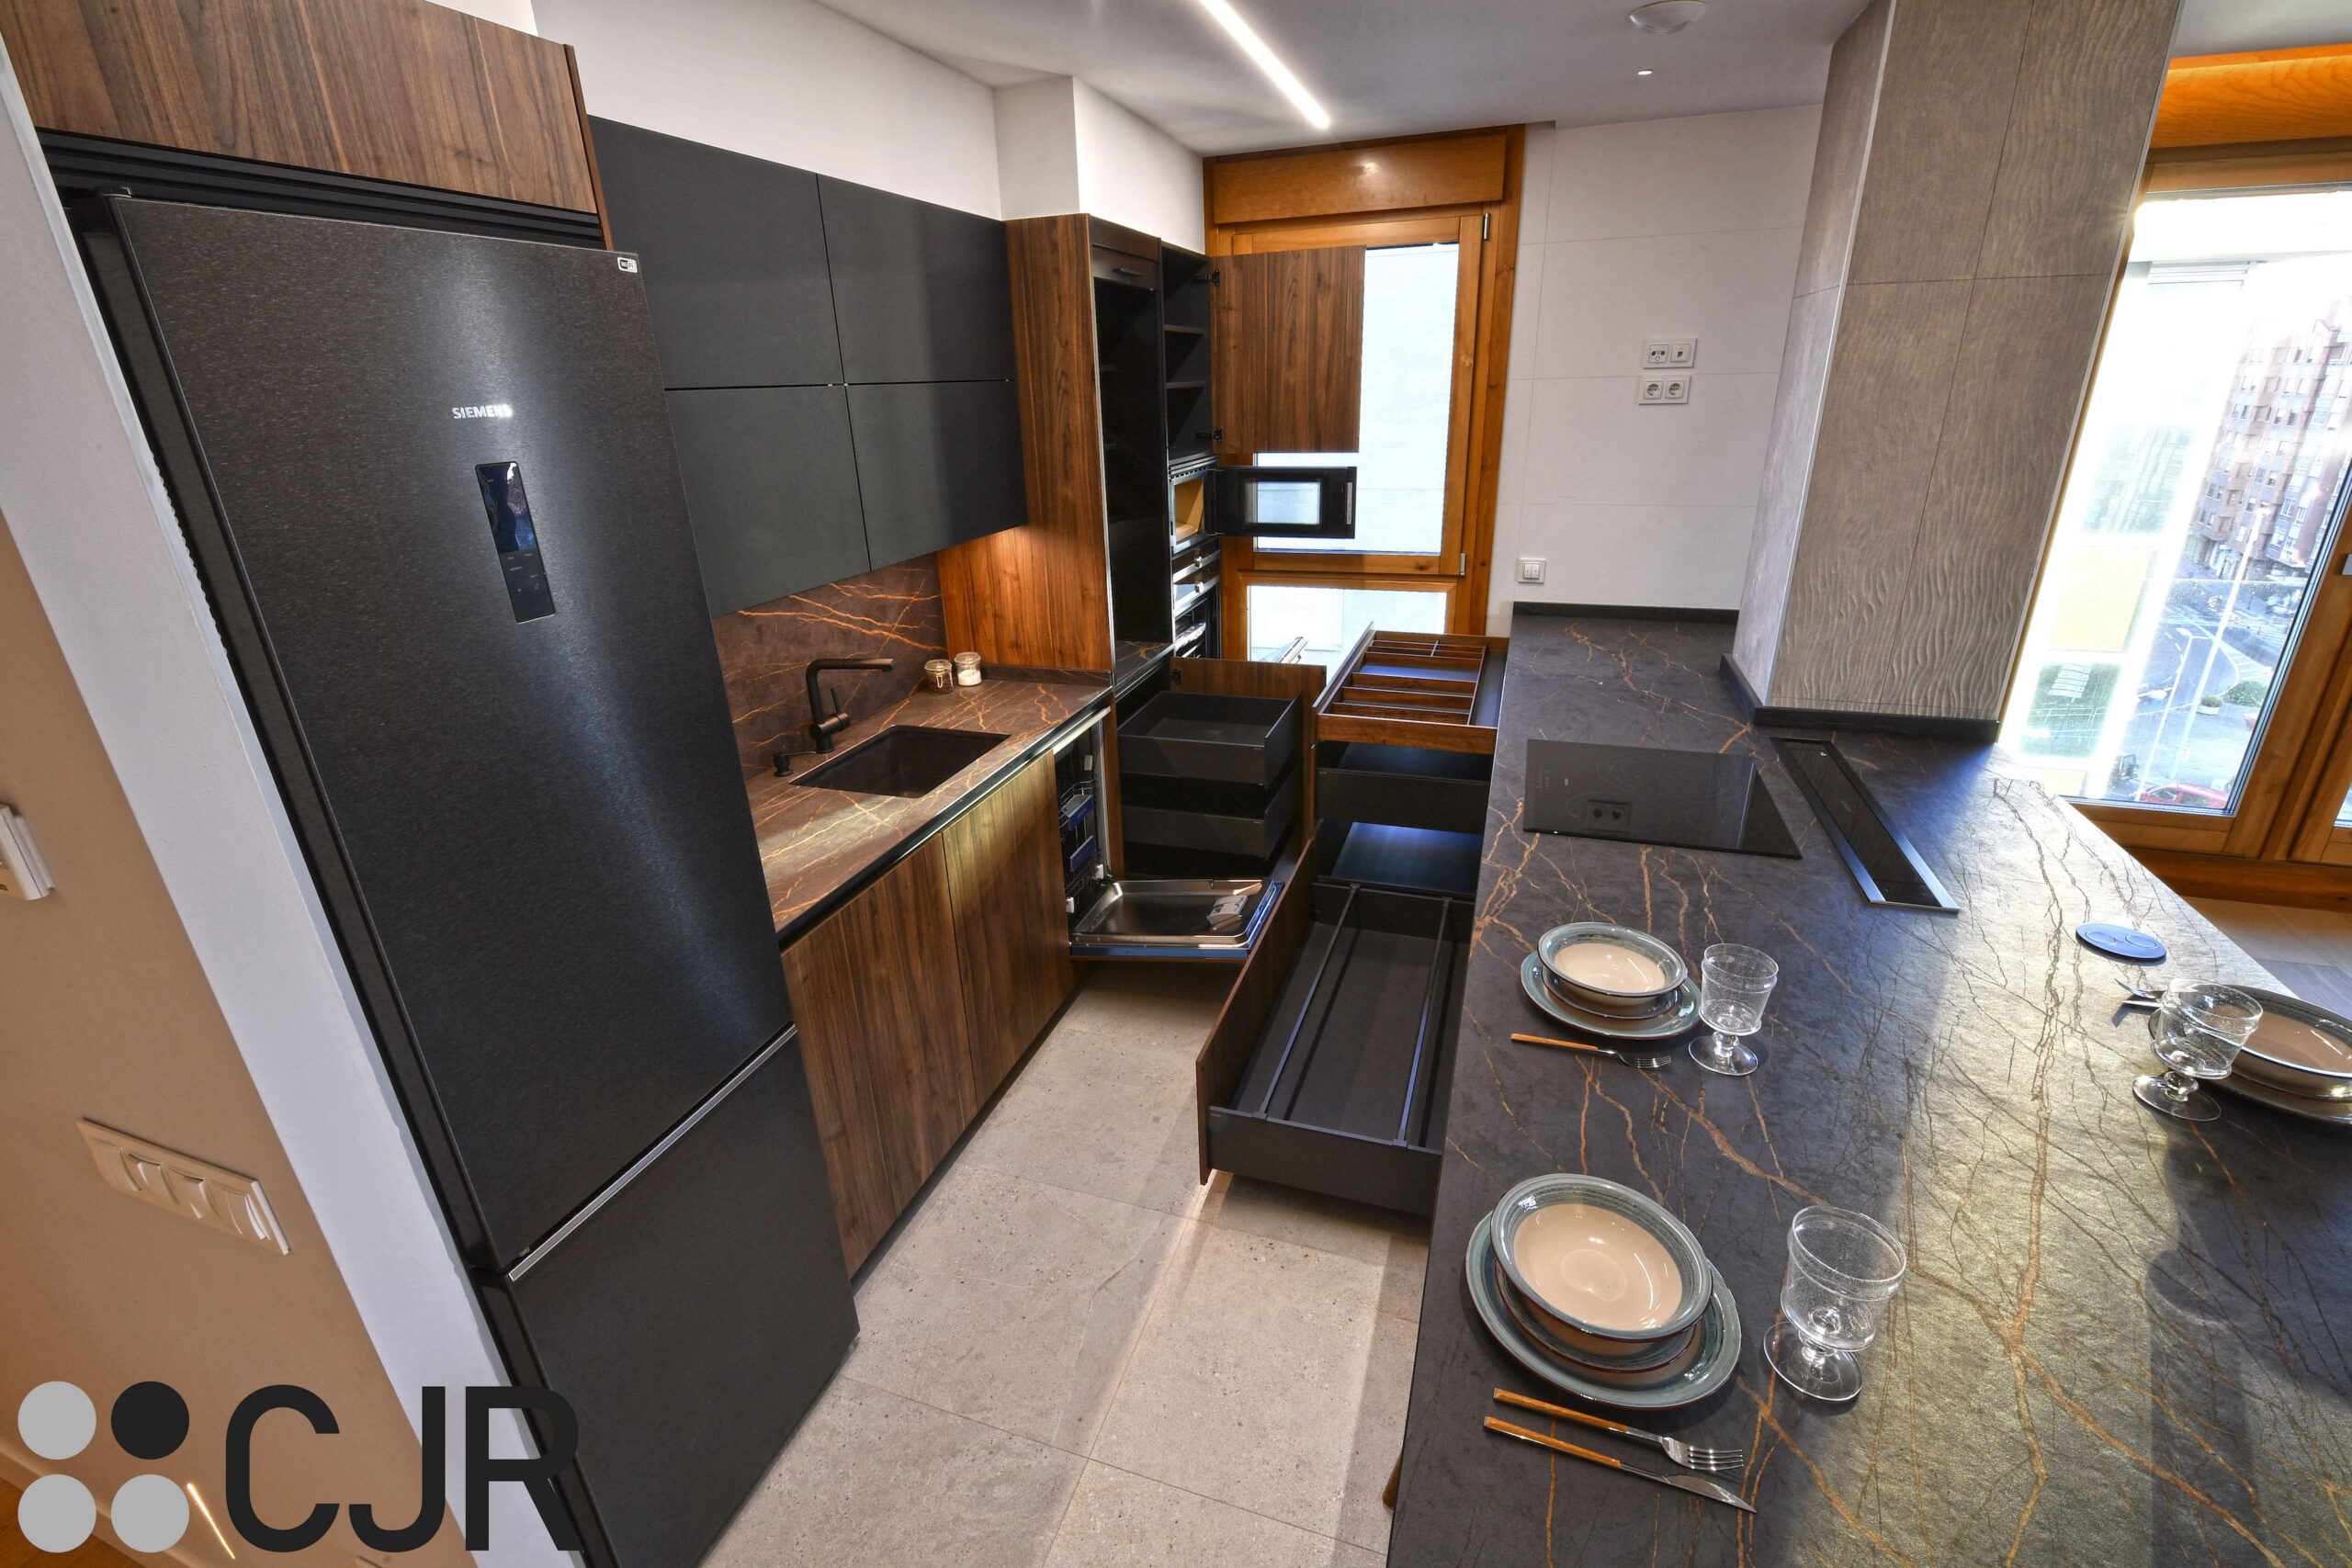 muebles de cocina en madera y negro en cocina abierta cocinas cjr